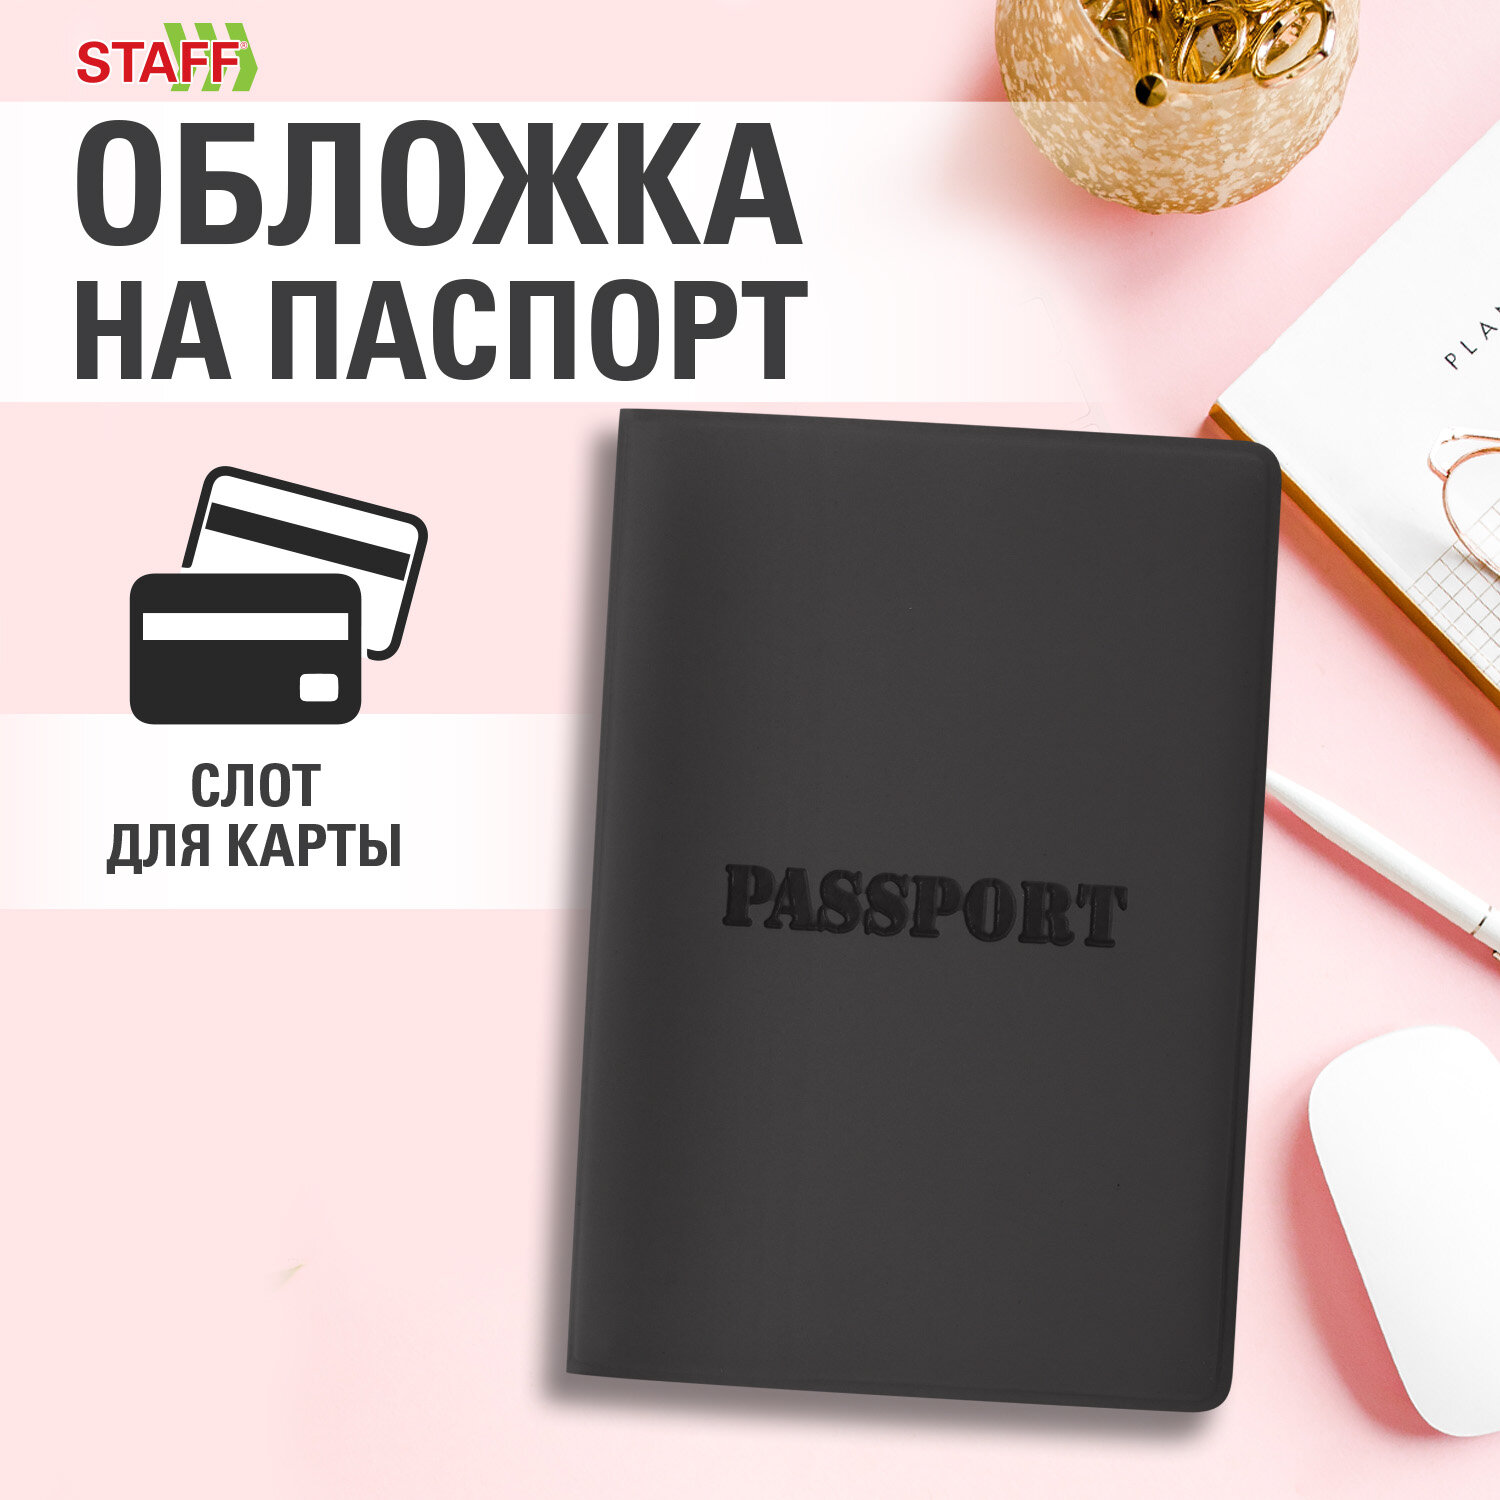 Обложка на паспорт Staff чехол - фото 1